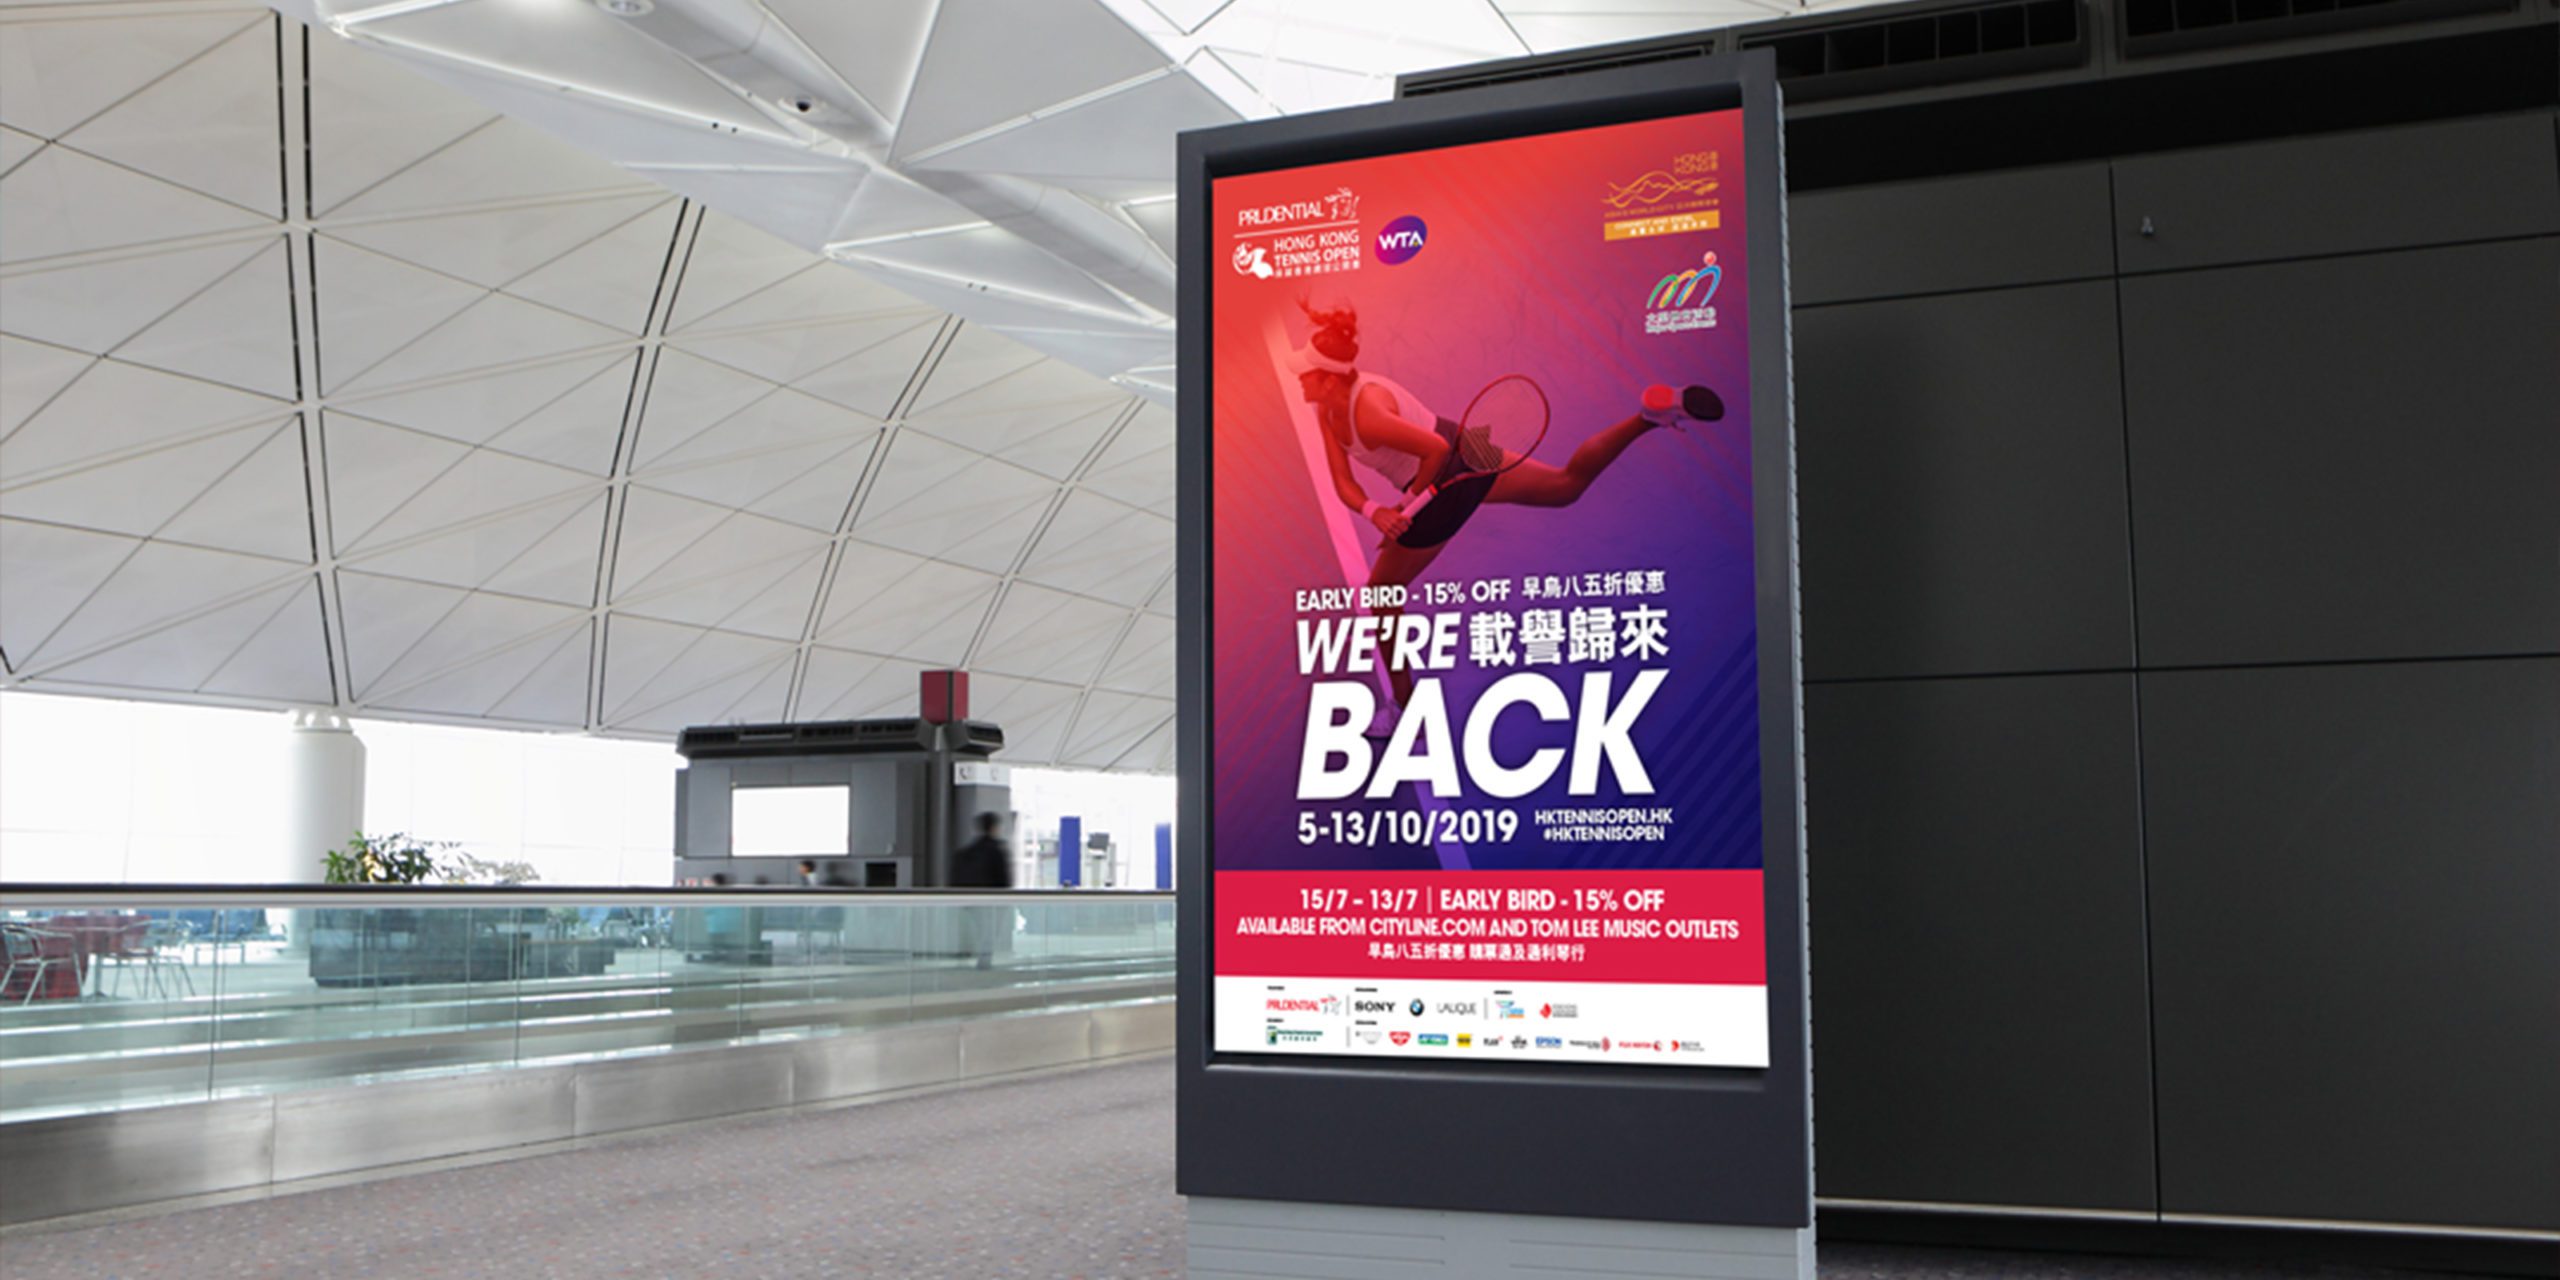 Hong Kong Tennis Open portrait advertisement in airport